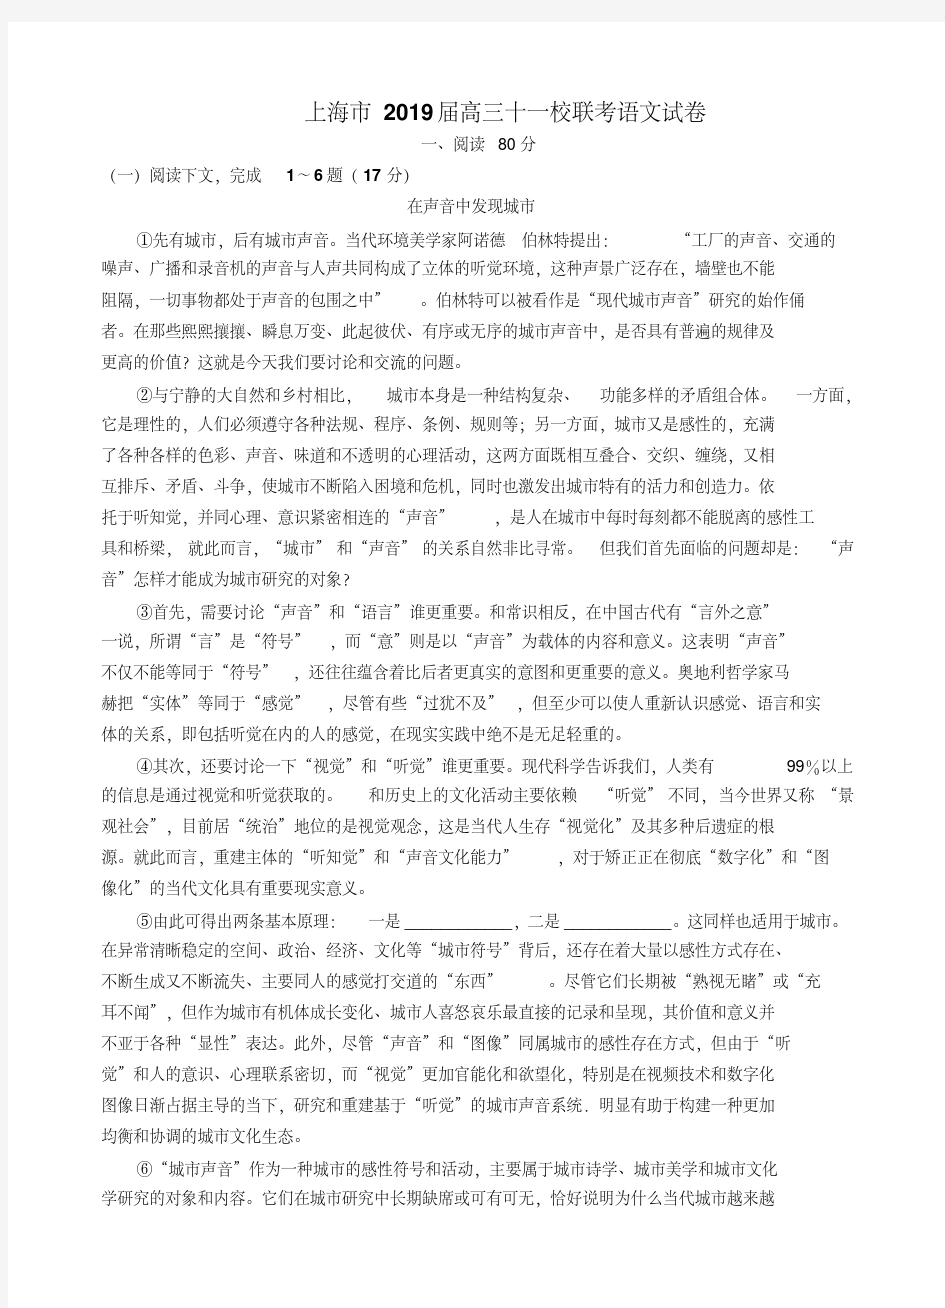 上海市十一校2019届高三12月联考语文试题及答案(20200420021122)